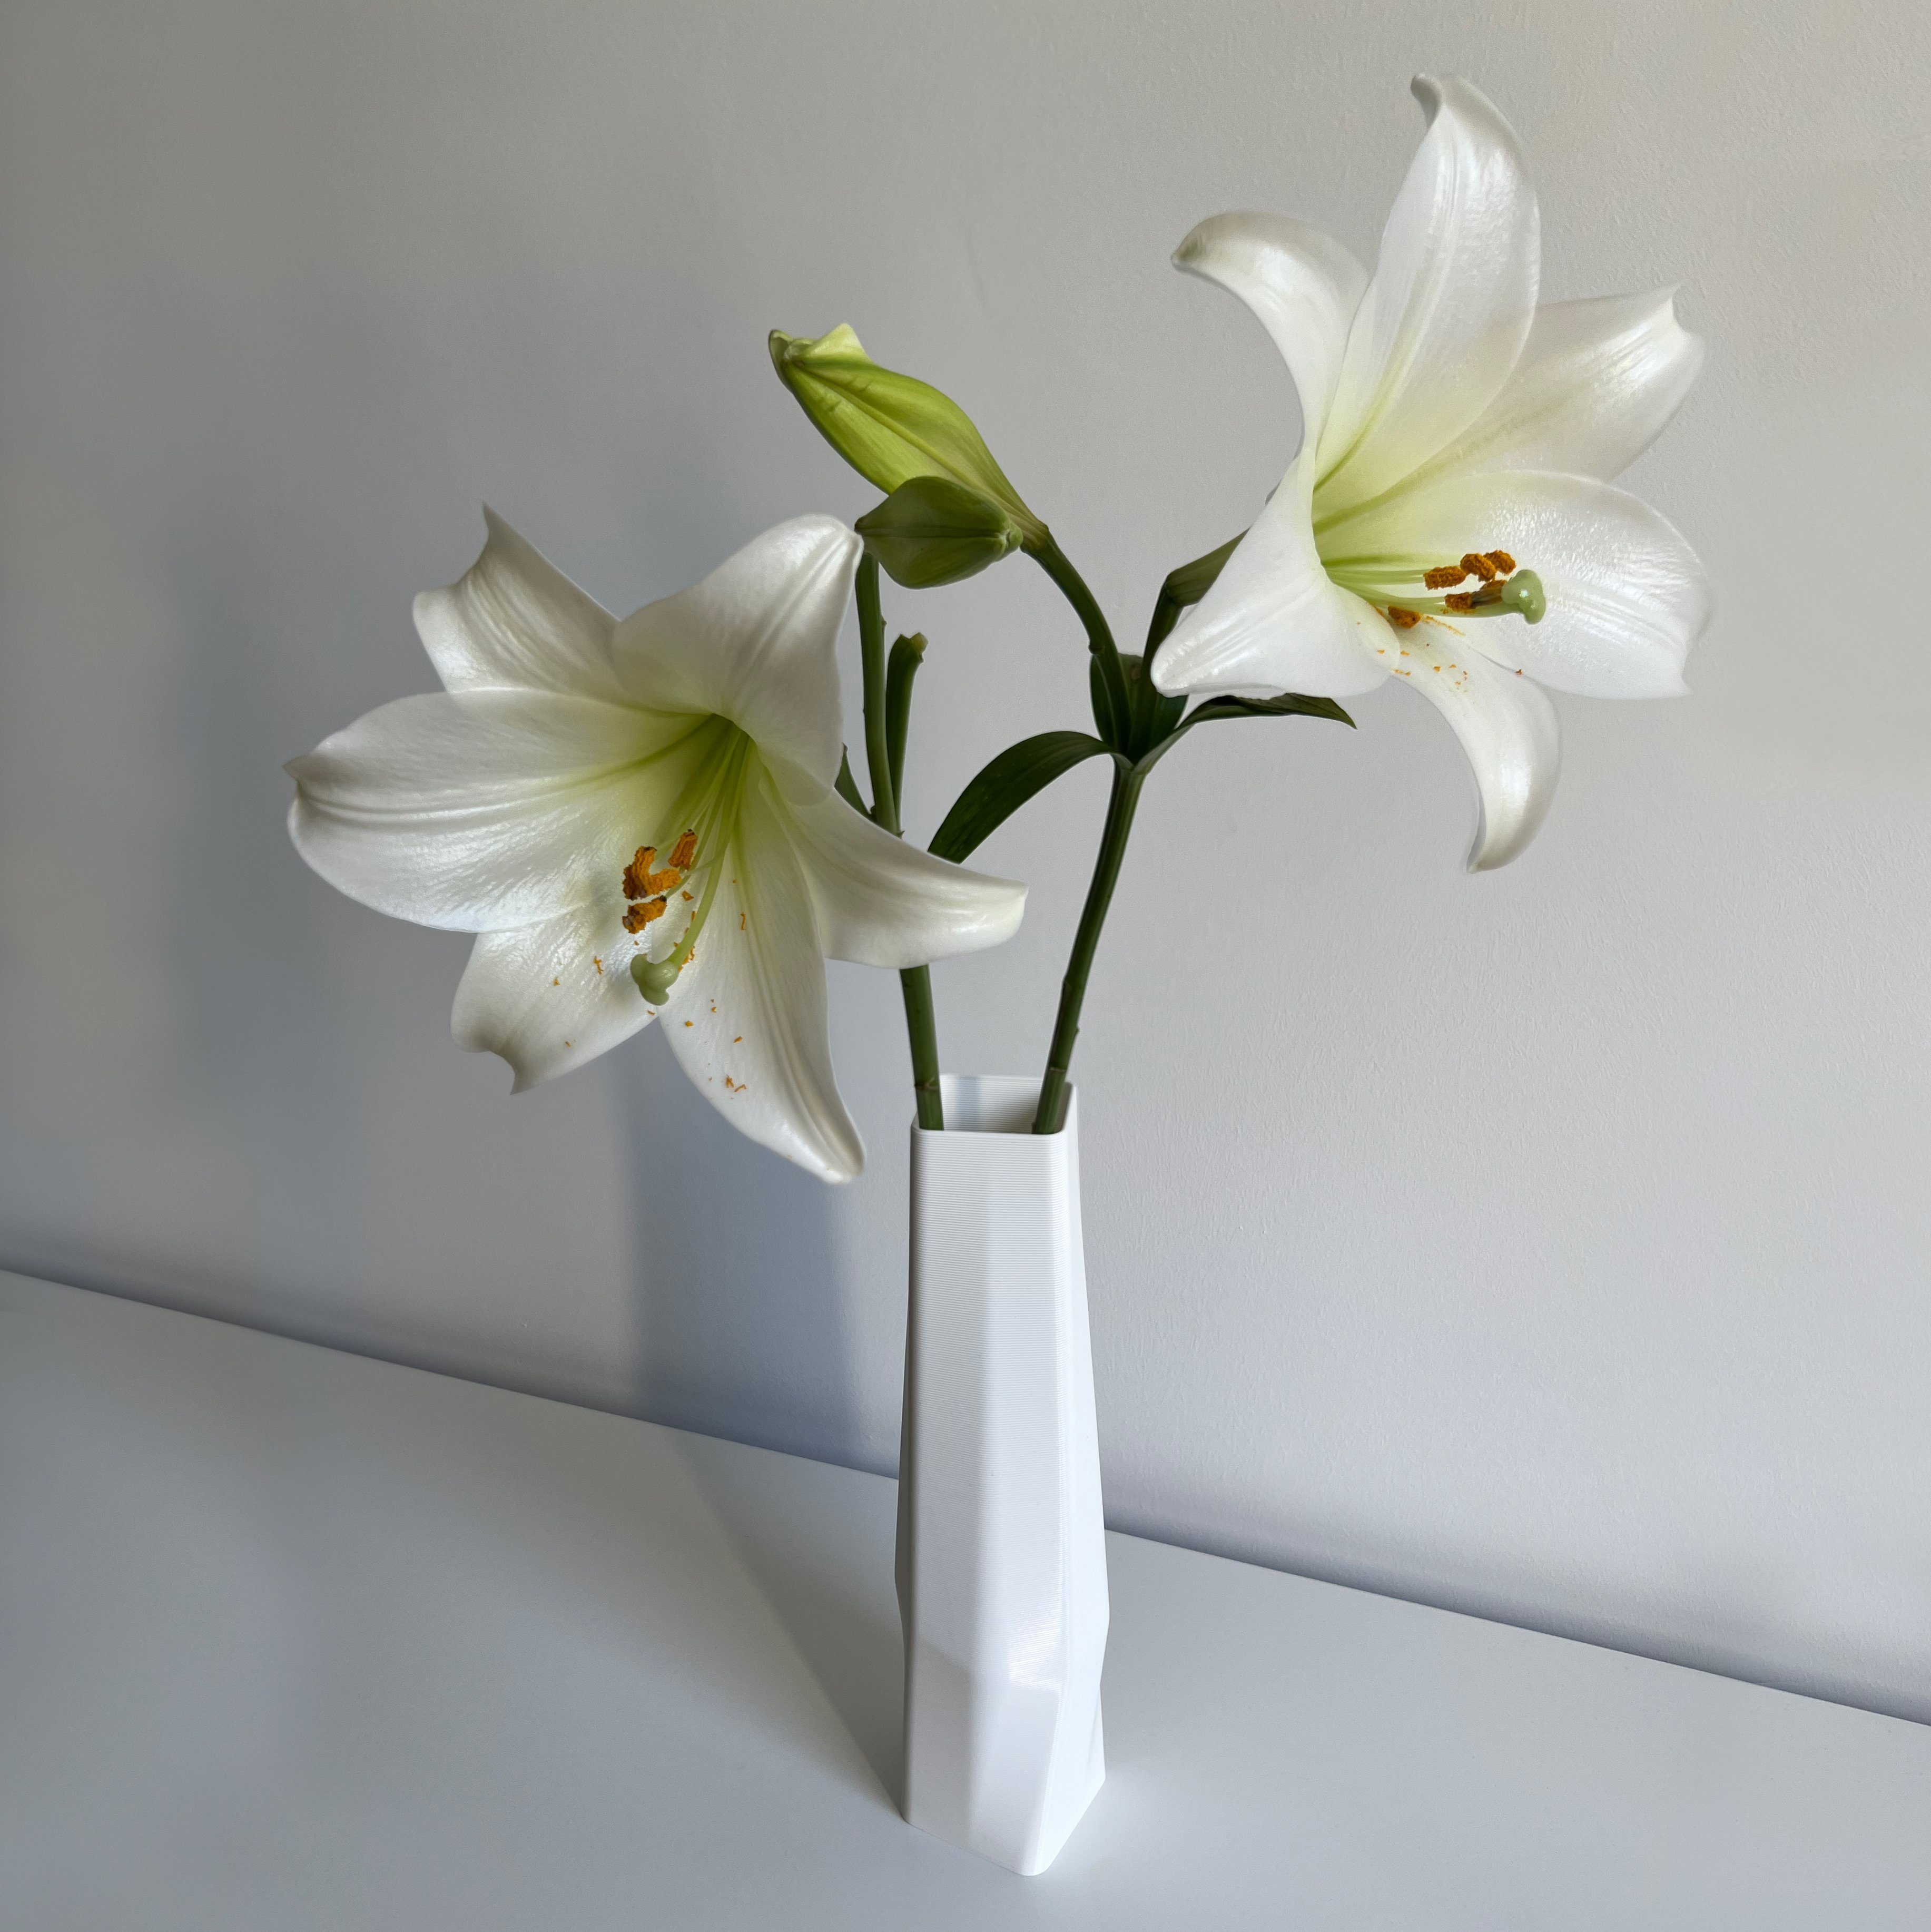 Shapes - Decorations Dekovase the Vase), 3D 3D-Druck Struktur Materials (Rillung) 1 Farben, 100% des - innerhalb Wasserdicht; square Weiß (Einzelmodell, vase (basic), viele Vasen, Leichte